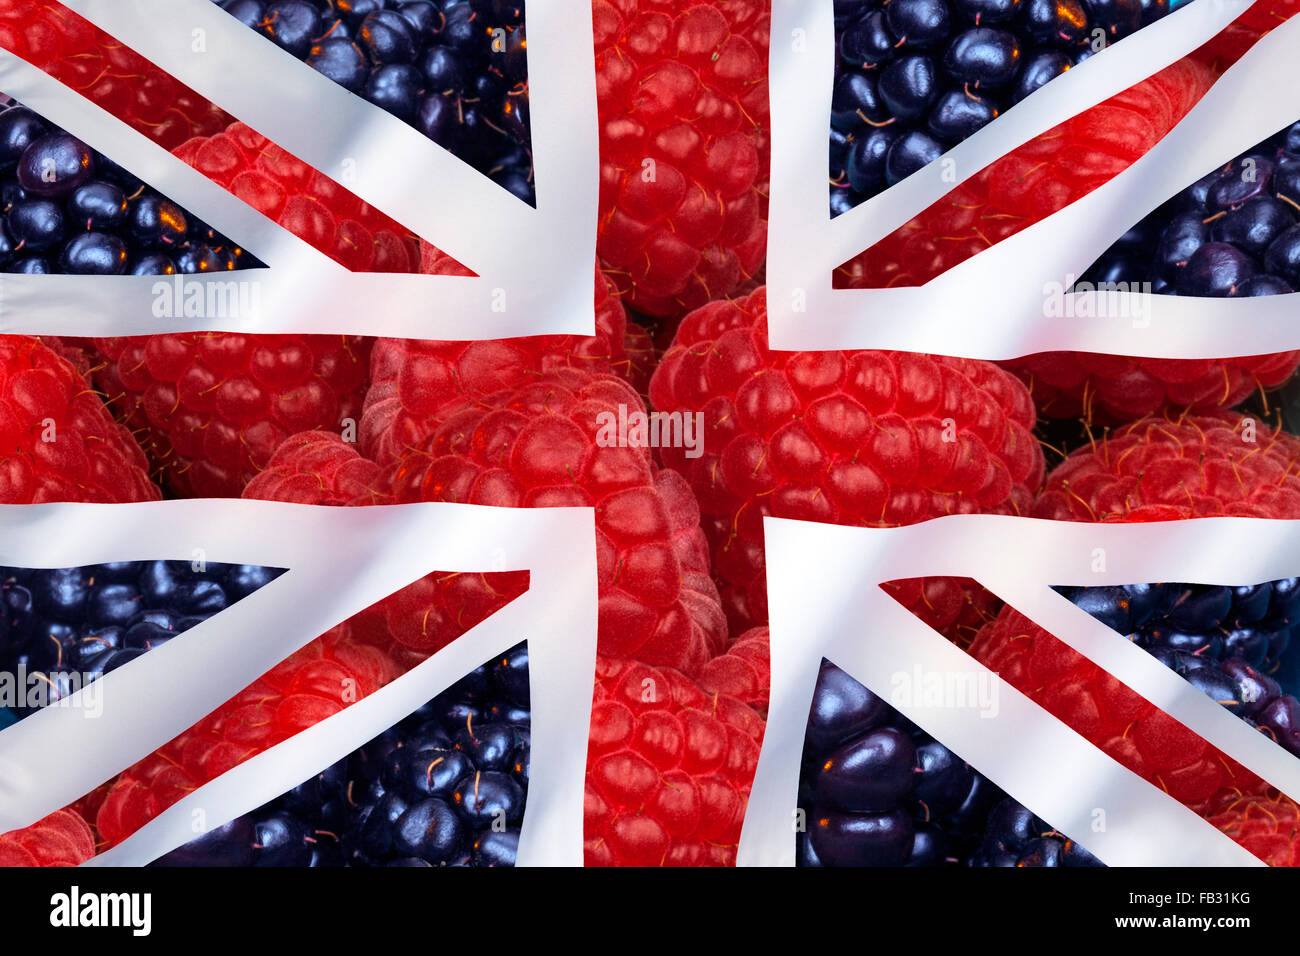 Fruits - framboise et cassis et pavillon du Royaume-Uni de Grande-Bretagne et d'Irlande du Nord Banque D'Images